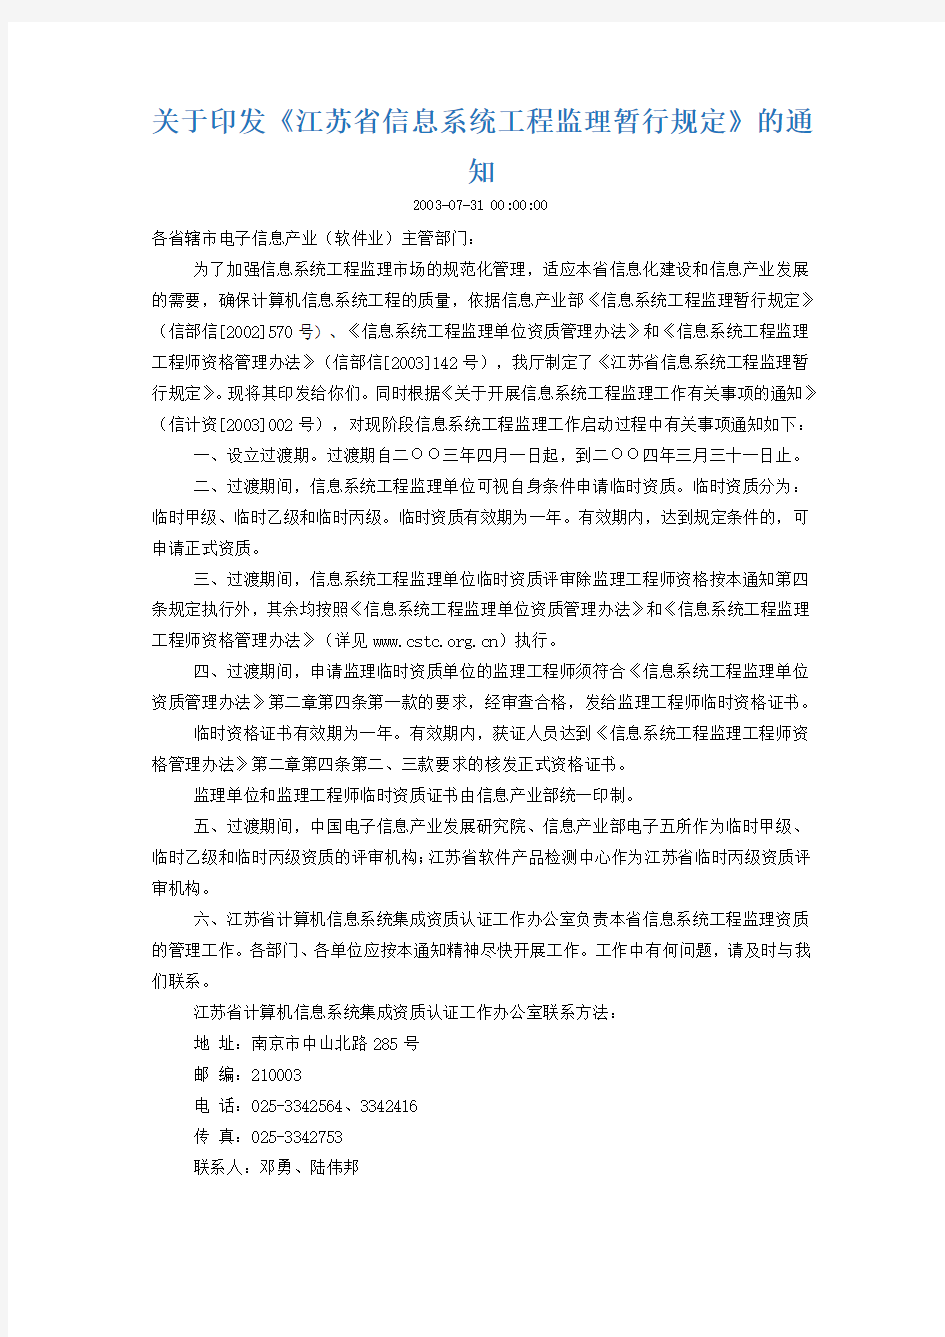 关于印发《江苏省信息系统工程监理暂行规定》的通知